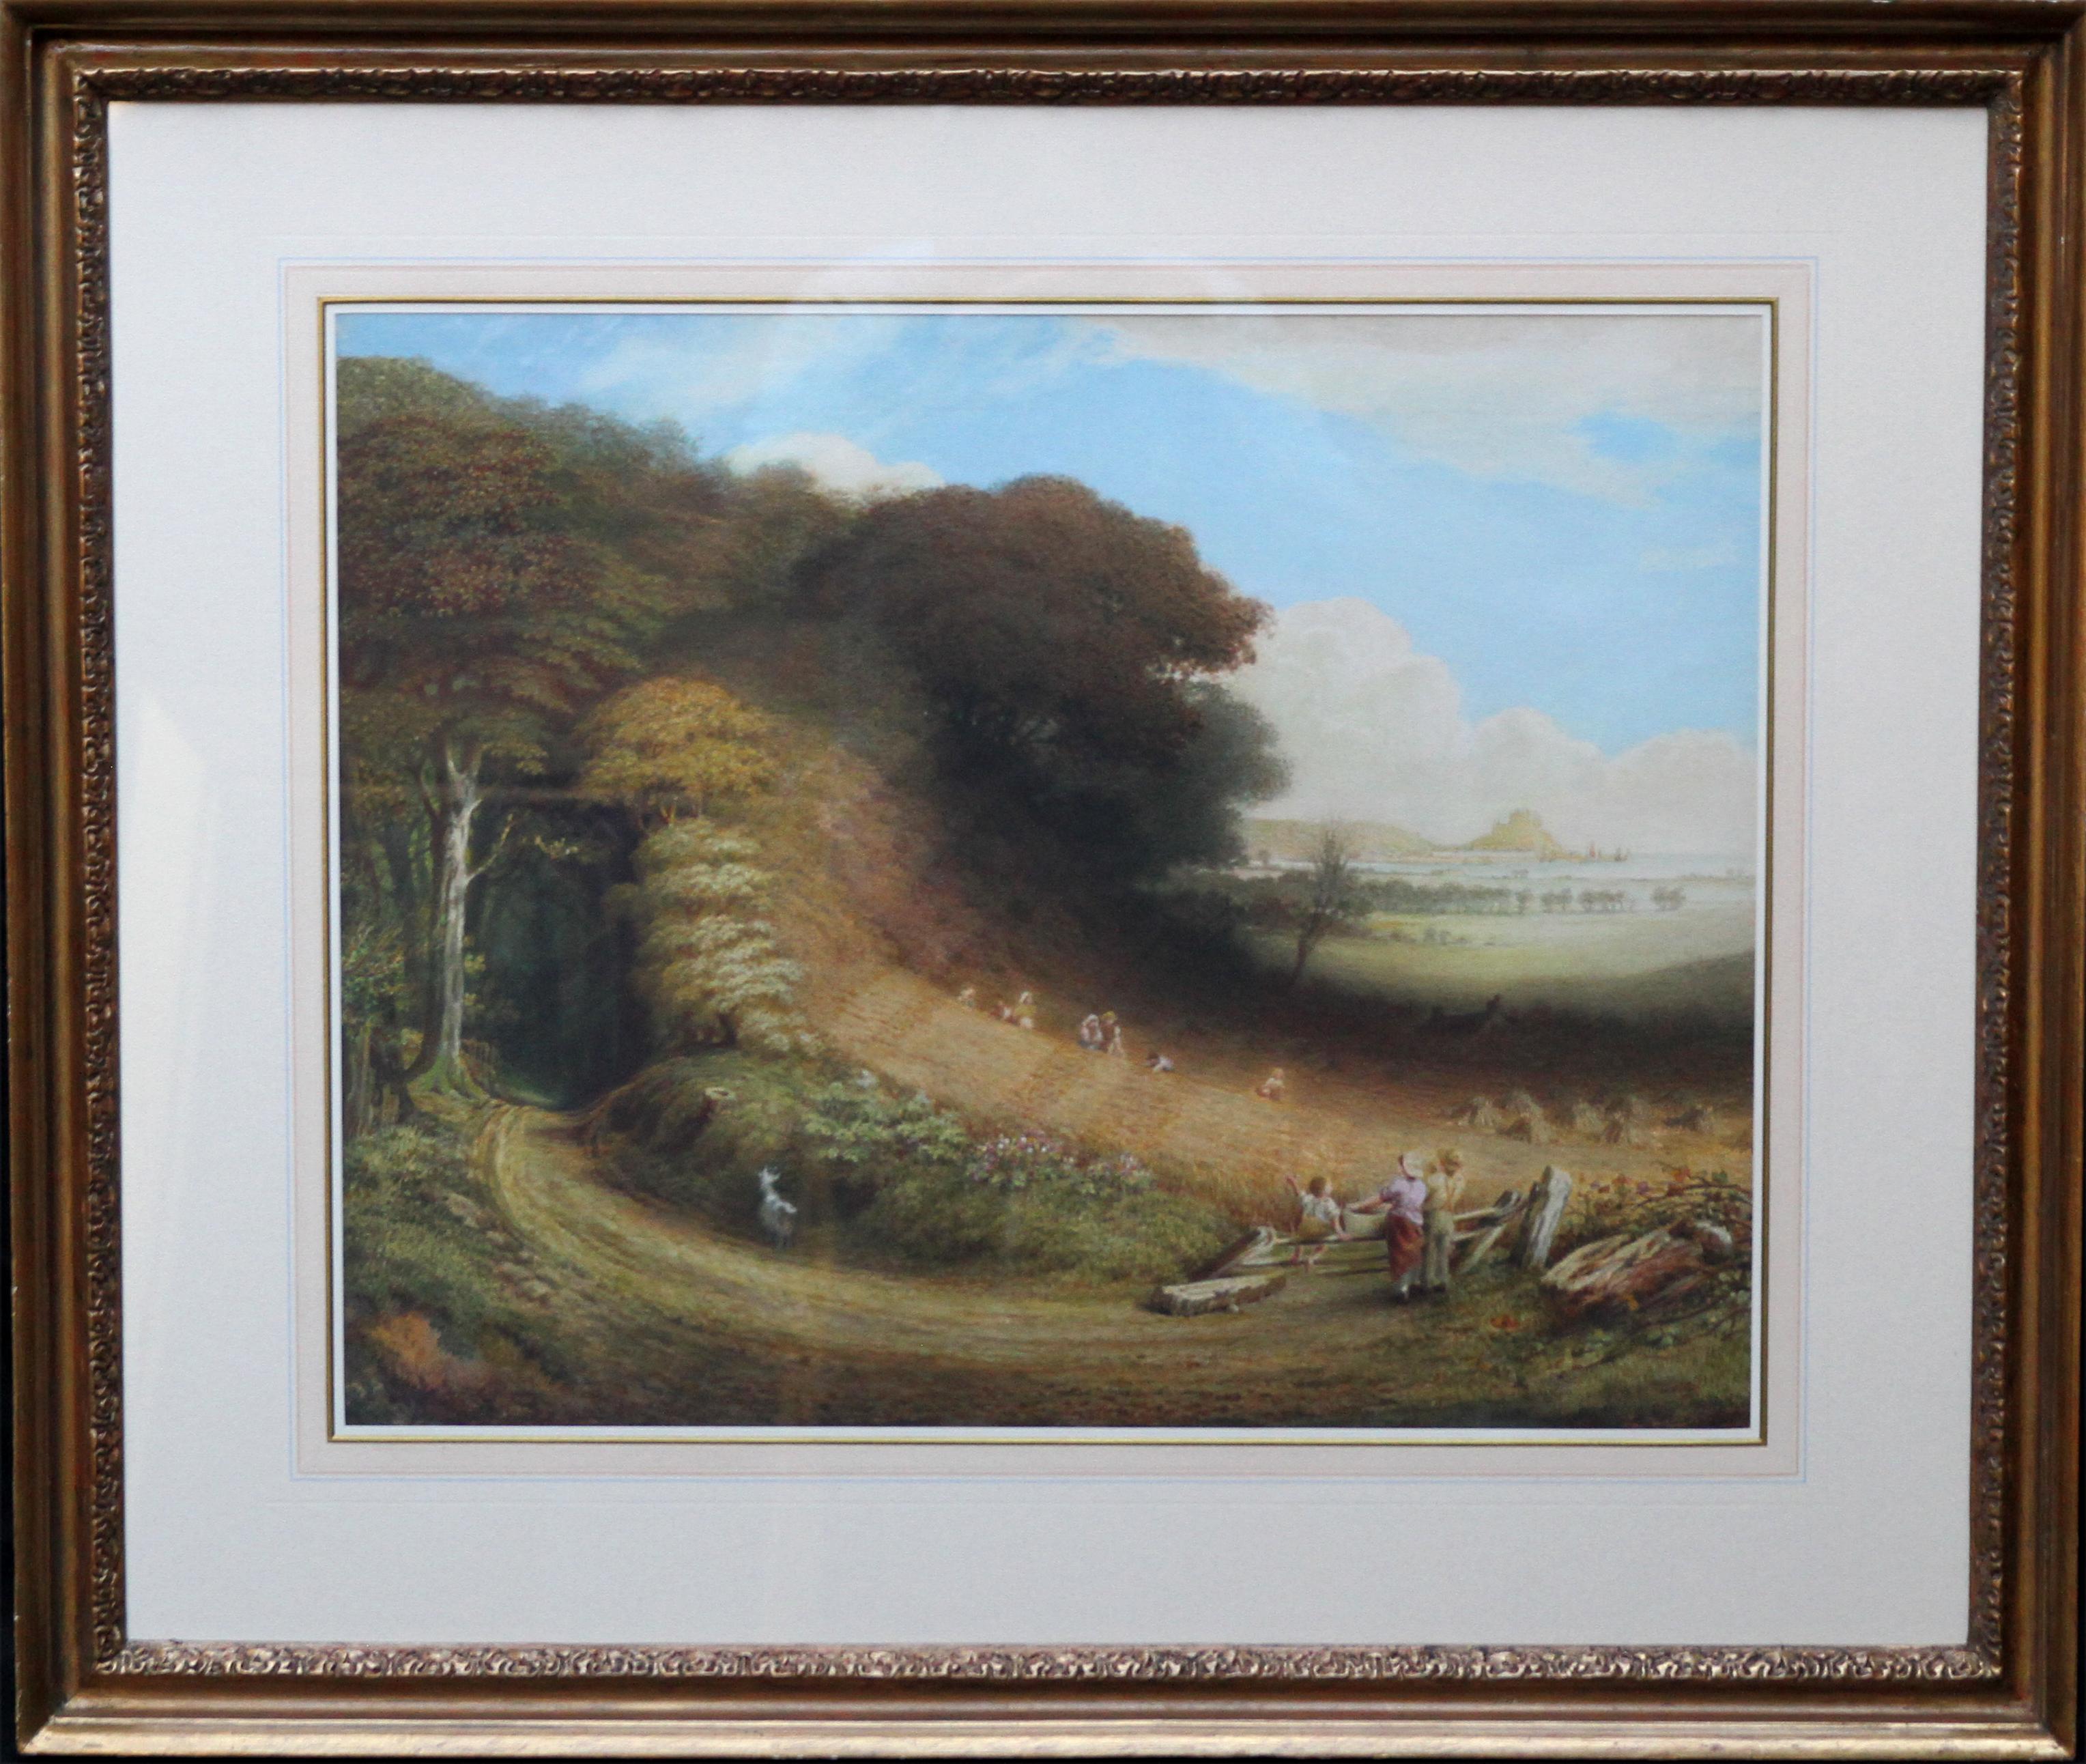 Michael's Mount - Art britannique du 19e siècle paysage peinture à l'huile Cornouailles